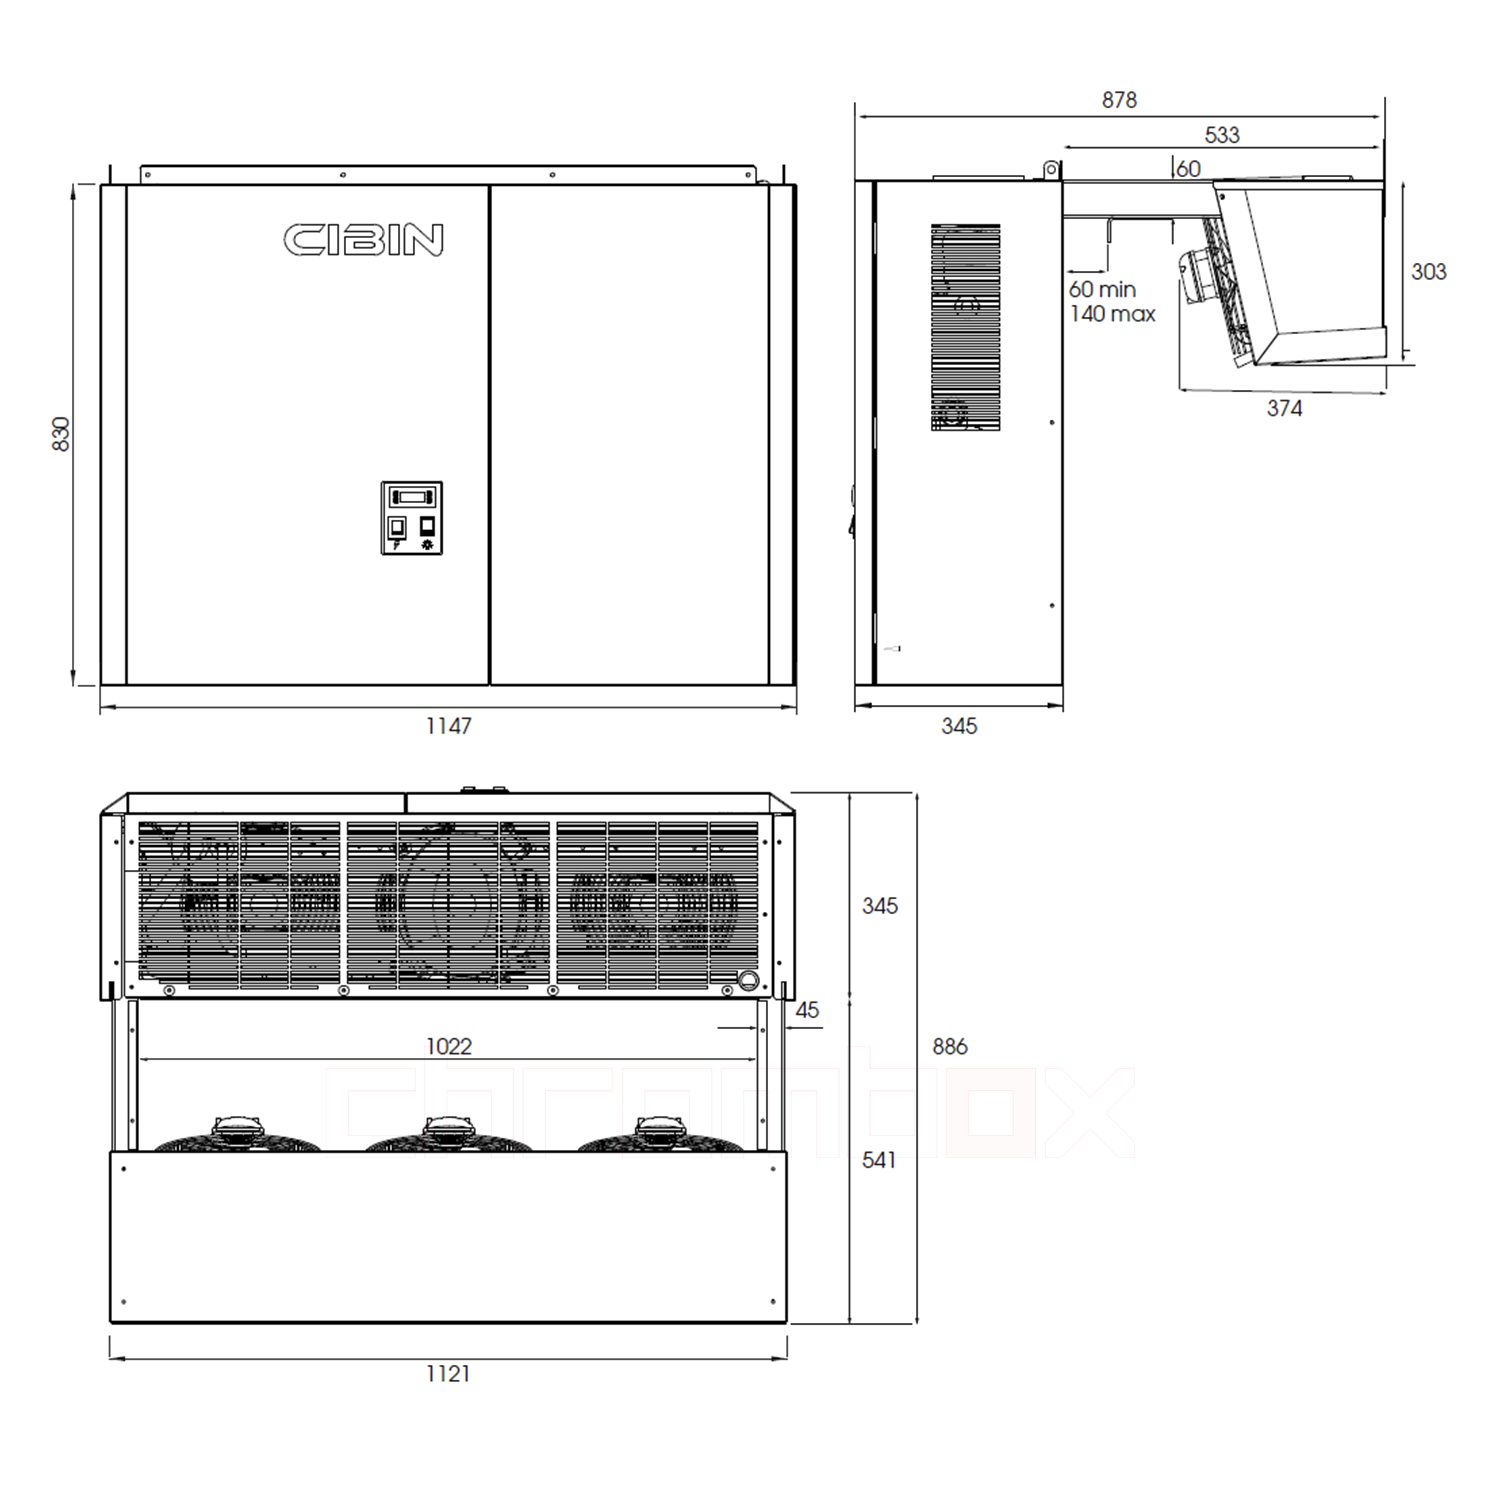 Technische Zeichnung zu Huckepack-Kühlaggregat Cibin LAIKA bis 20 m3, steckerfertig